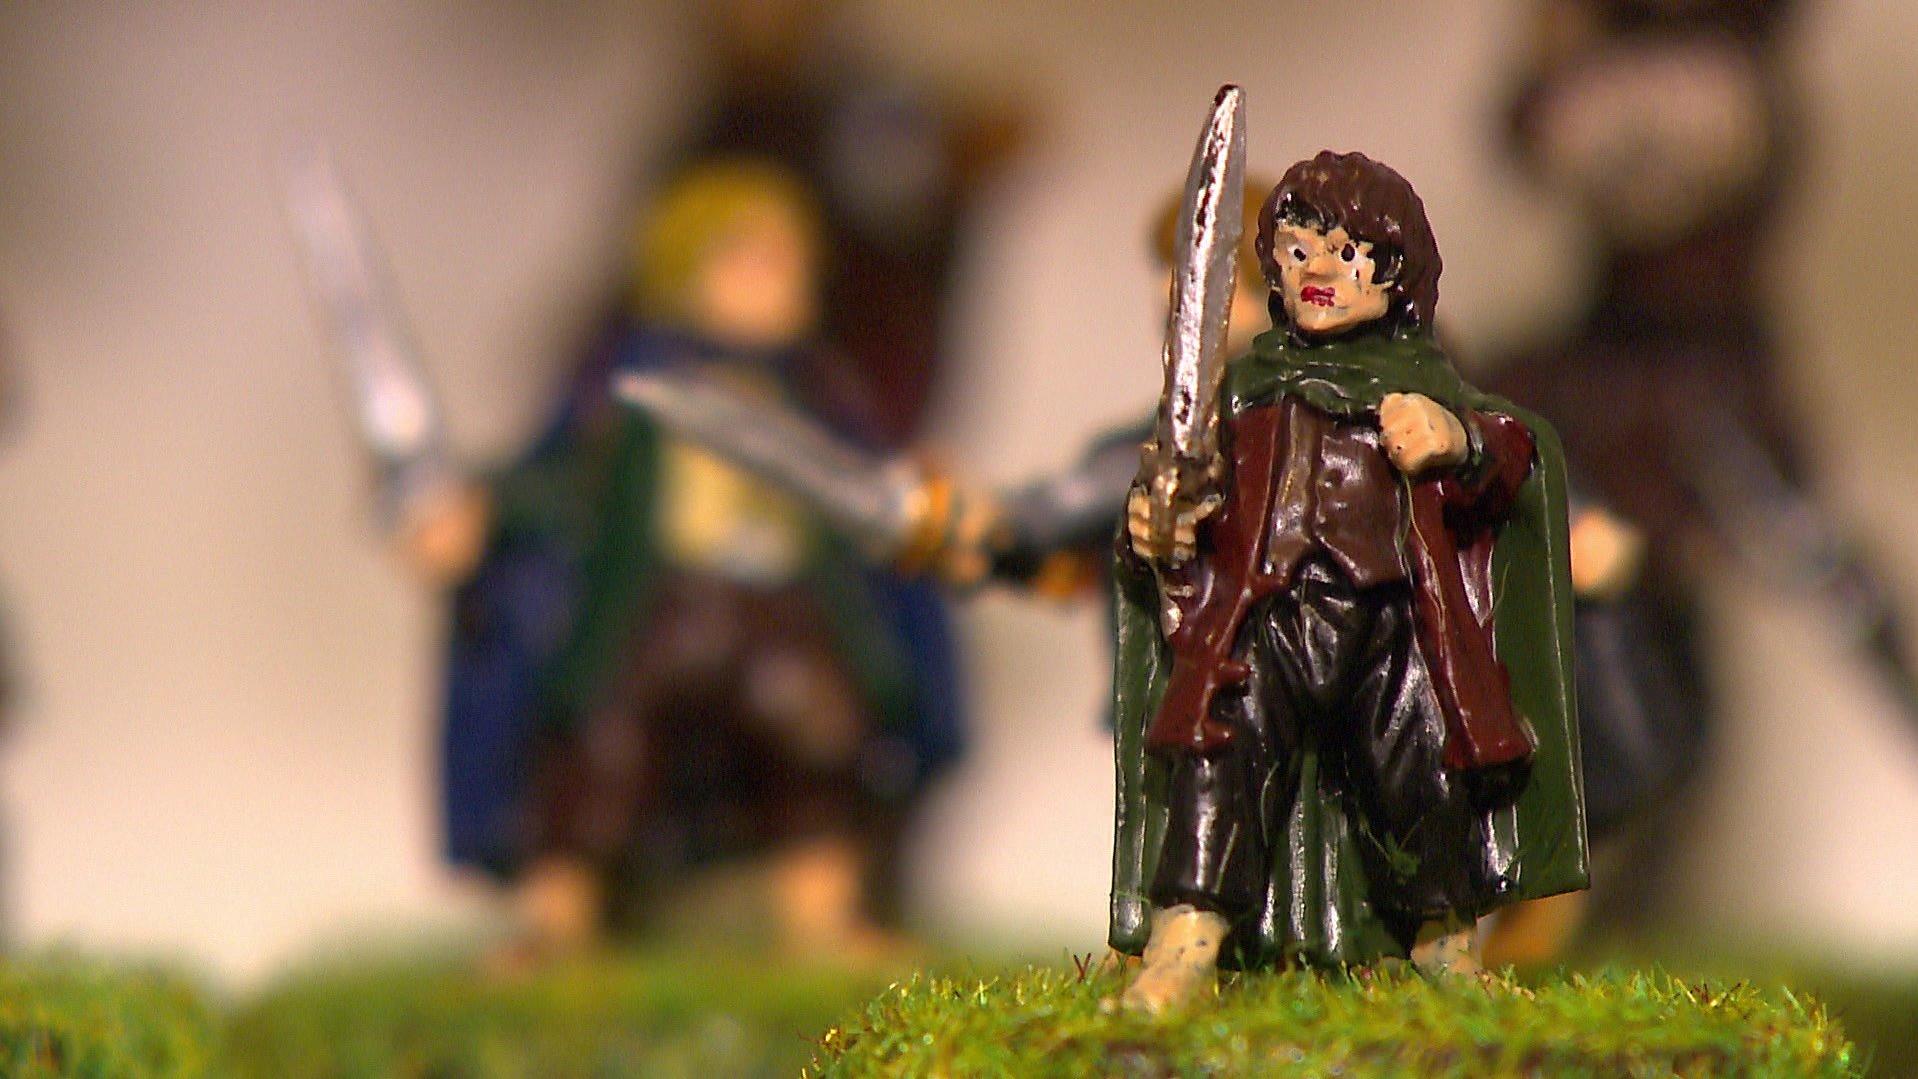 Frodo aus Herr der Ringe als Miniaturfigur.